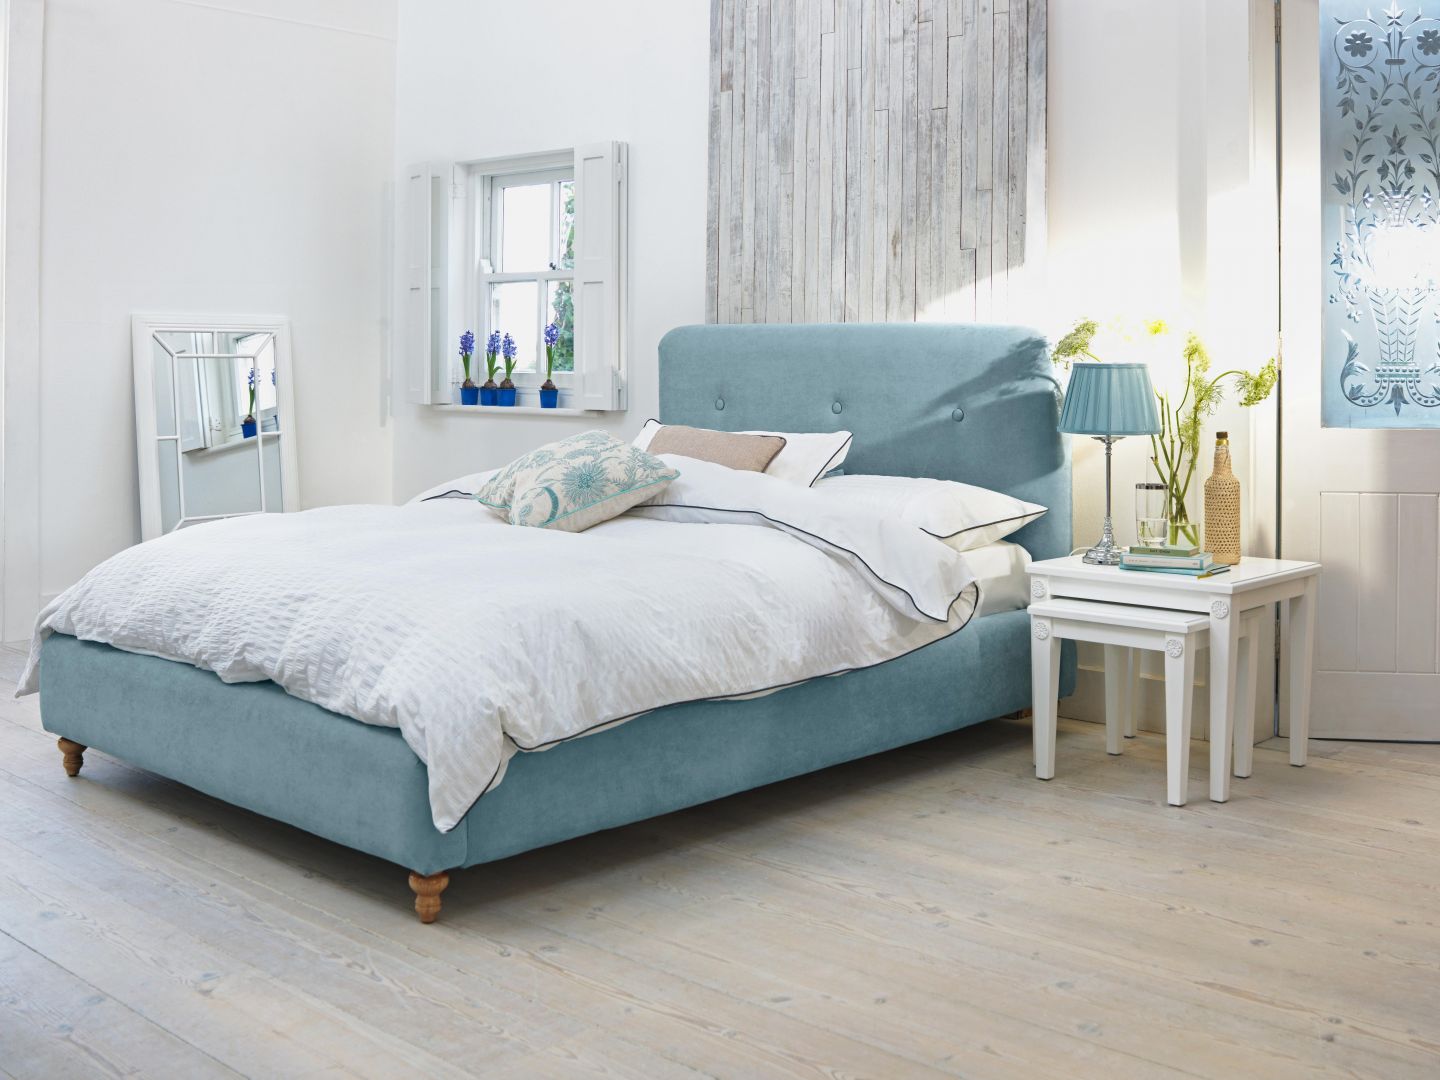 Niebieska tkanina łóżka nada wnętrzu sypialni świeży styl. Fot. Agros